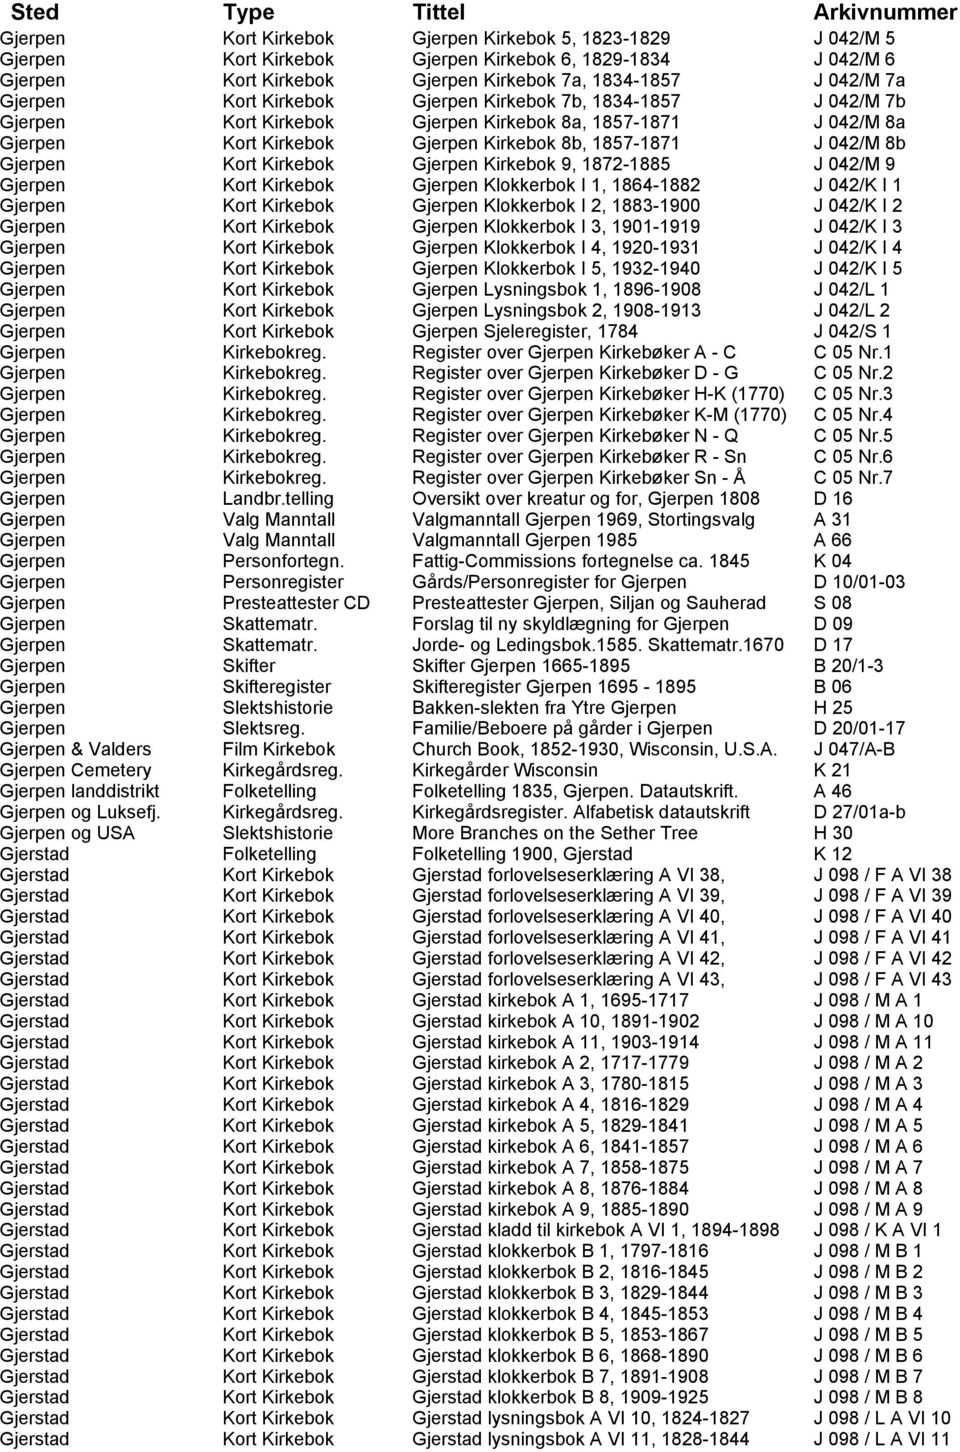 Kirkebok Gjerpen Kirkebok 9, 1872-1885 J 042/M 9 Gjerpen Kort Kirkebok Gjerpen Klokkerbok I 1, 1864-1882 J 042/K I 1 Gjerpen Kort Kirkebok Gjerpen Klokkerbok I 2, 1883-1900 J 042/K I 2 Gjerpen Kort